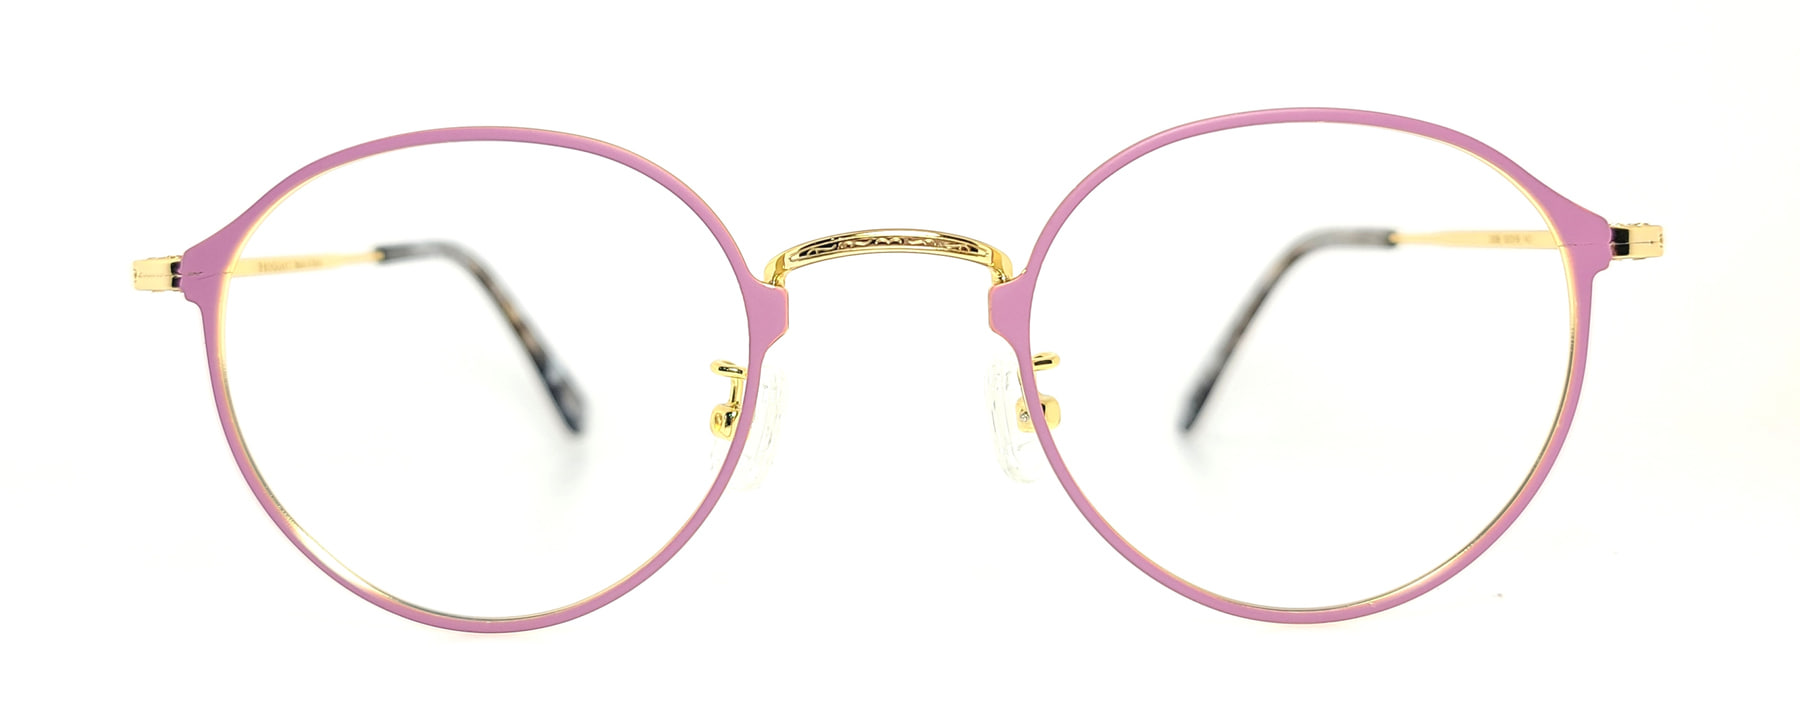 LUBECK 3008, Korean glasses, sunglasses, eyeglasses, glasses